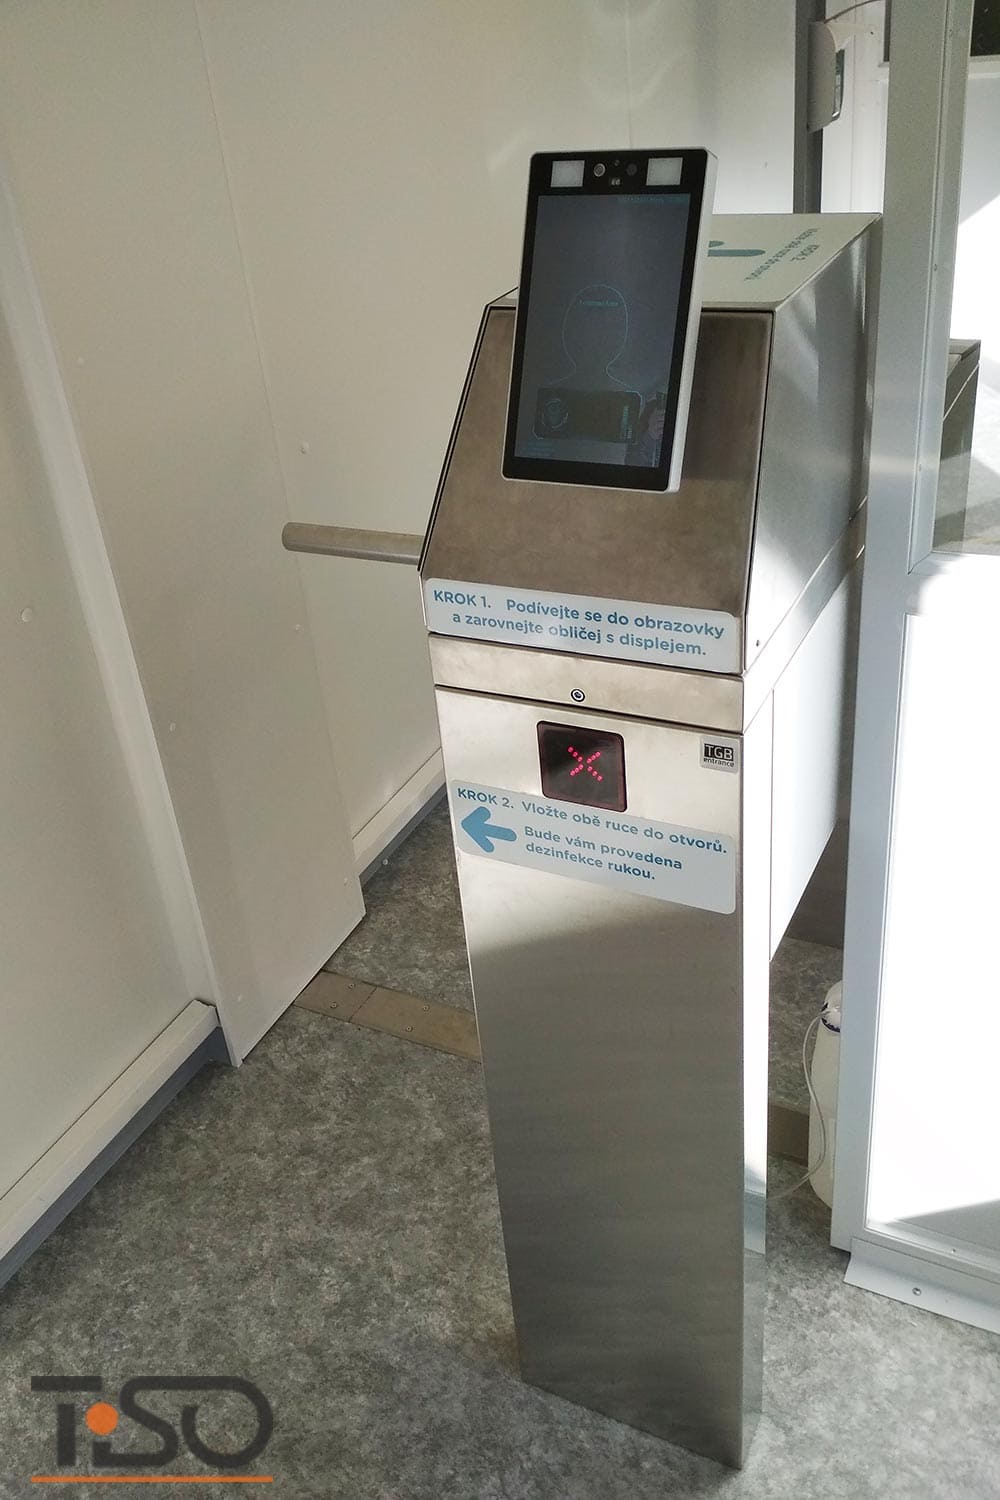 Twix-M e sistema automatico di disinfezione delle mani, ospedale Horovice, Repubblica Ceca